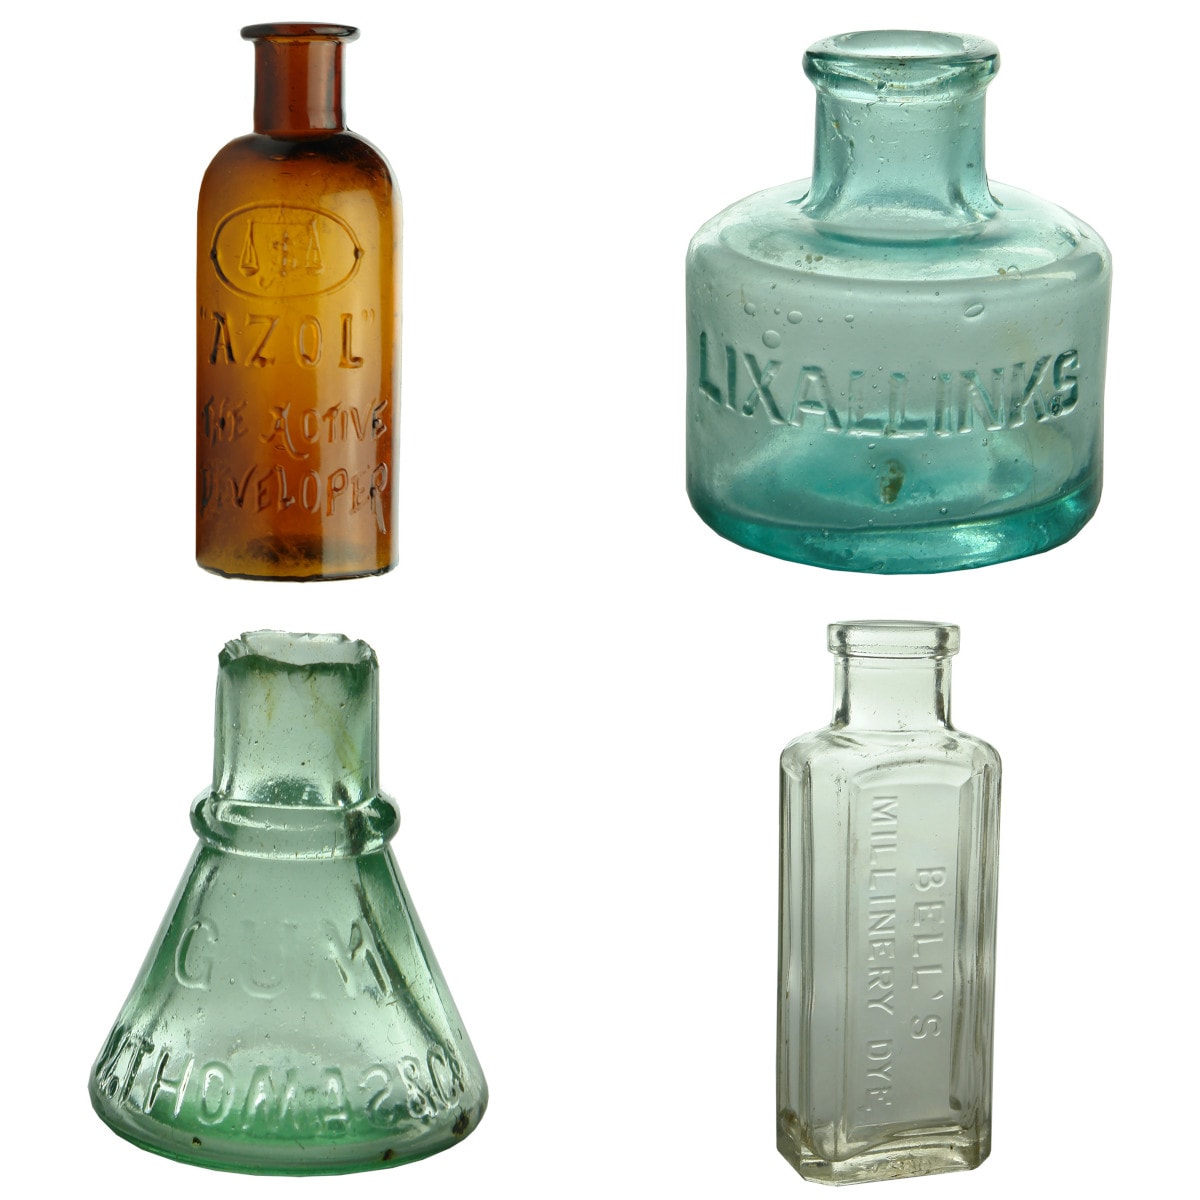 4 Bottles: Azol Photo Developer; Lixall Inks; W. Thomas & Co Gum.;  Bell's Hat Dye.